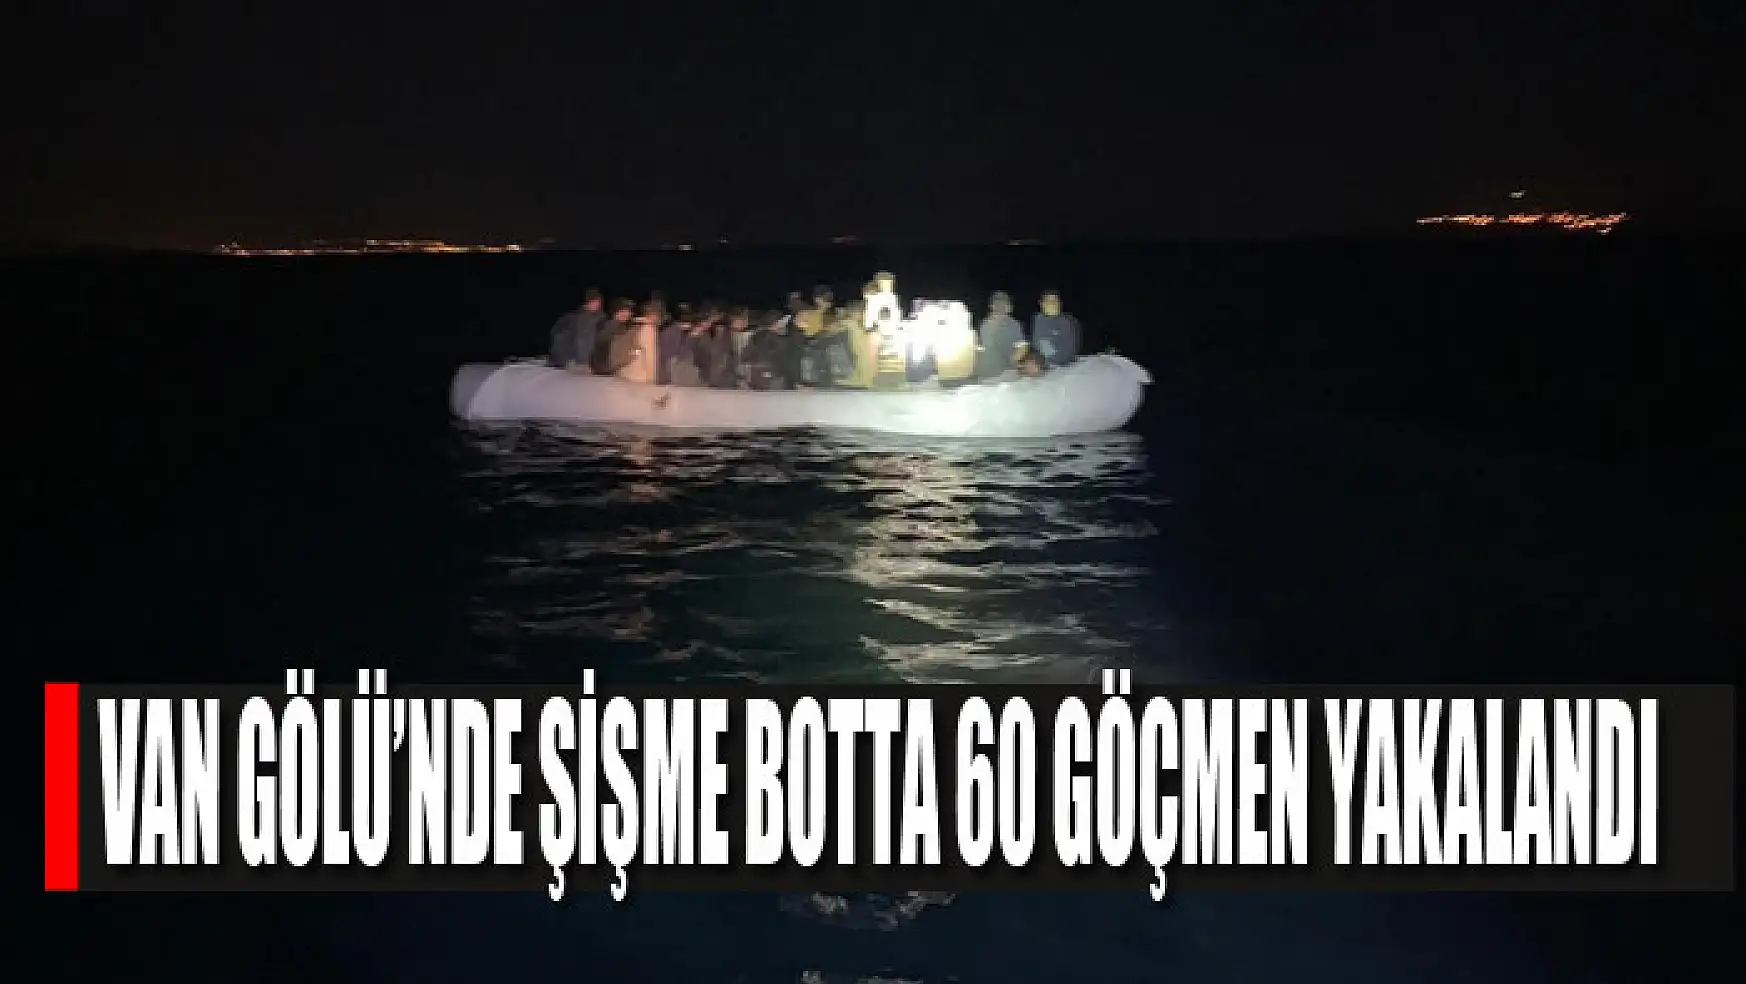 Van Gölü'nde şişme botta 60 göçmen yakalandı